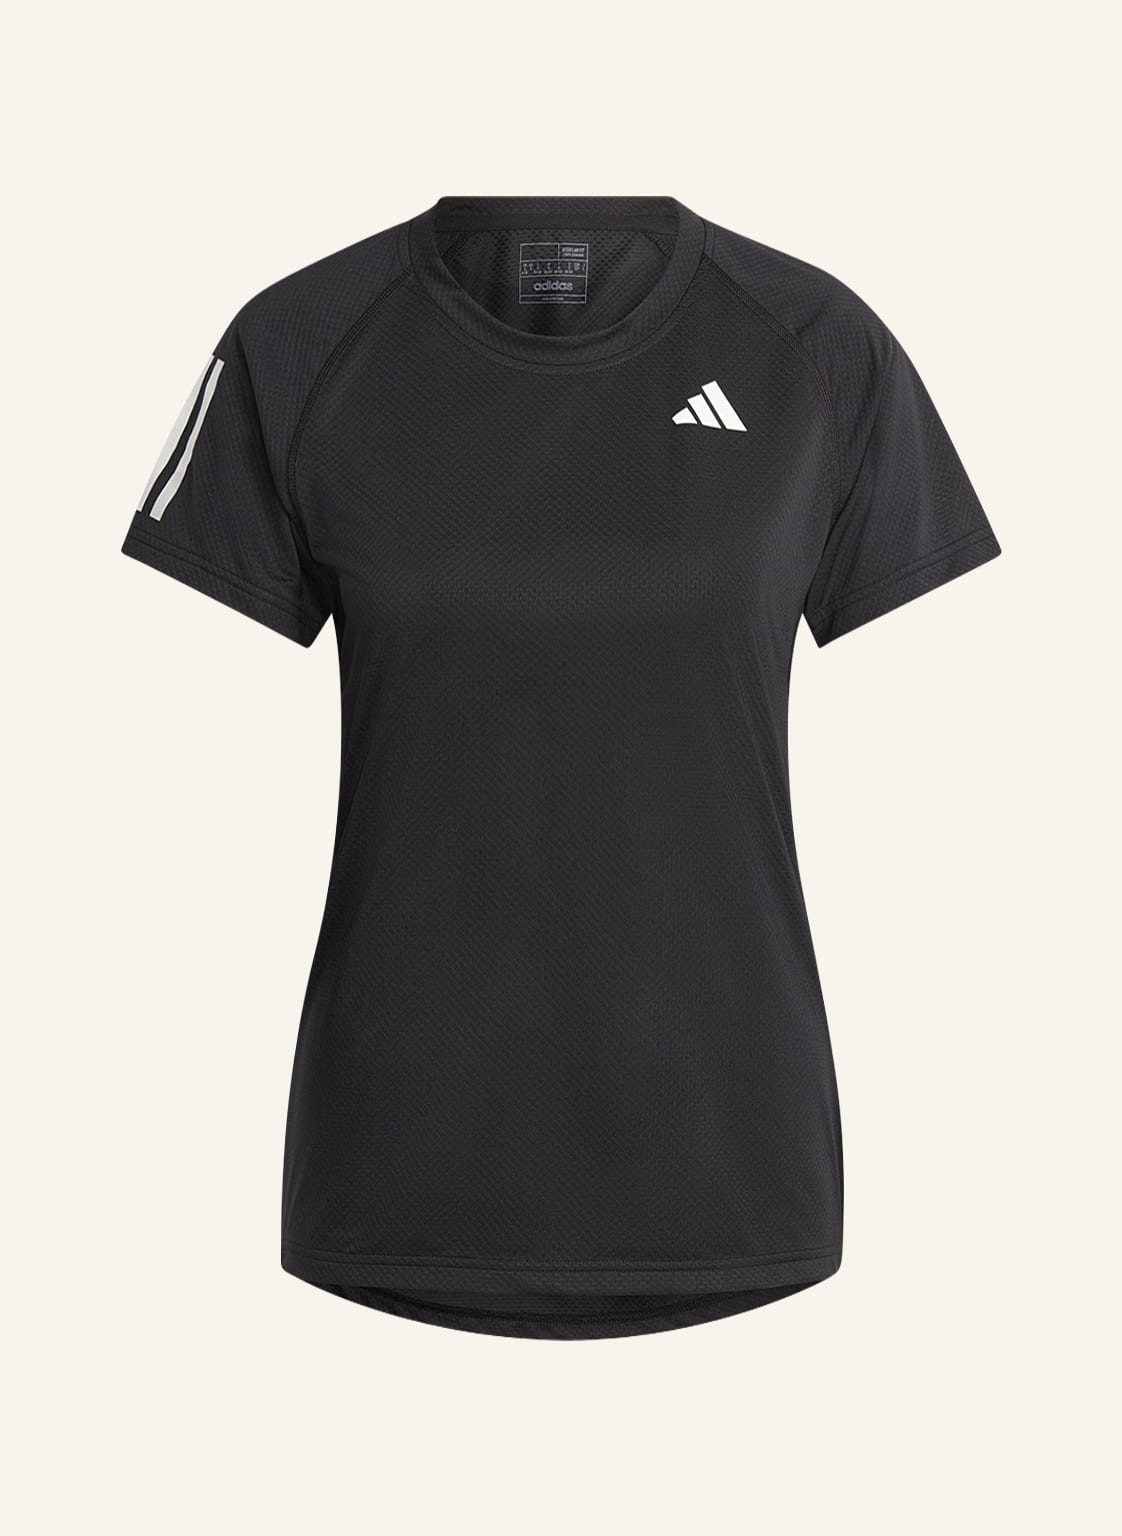 Adidas T-Shirt Club Mit Mesh schwarz von Adidas